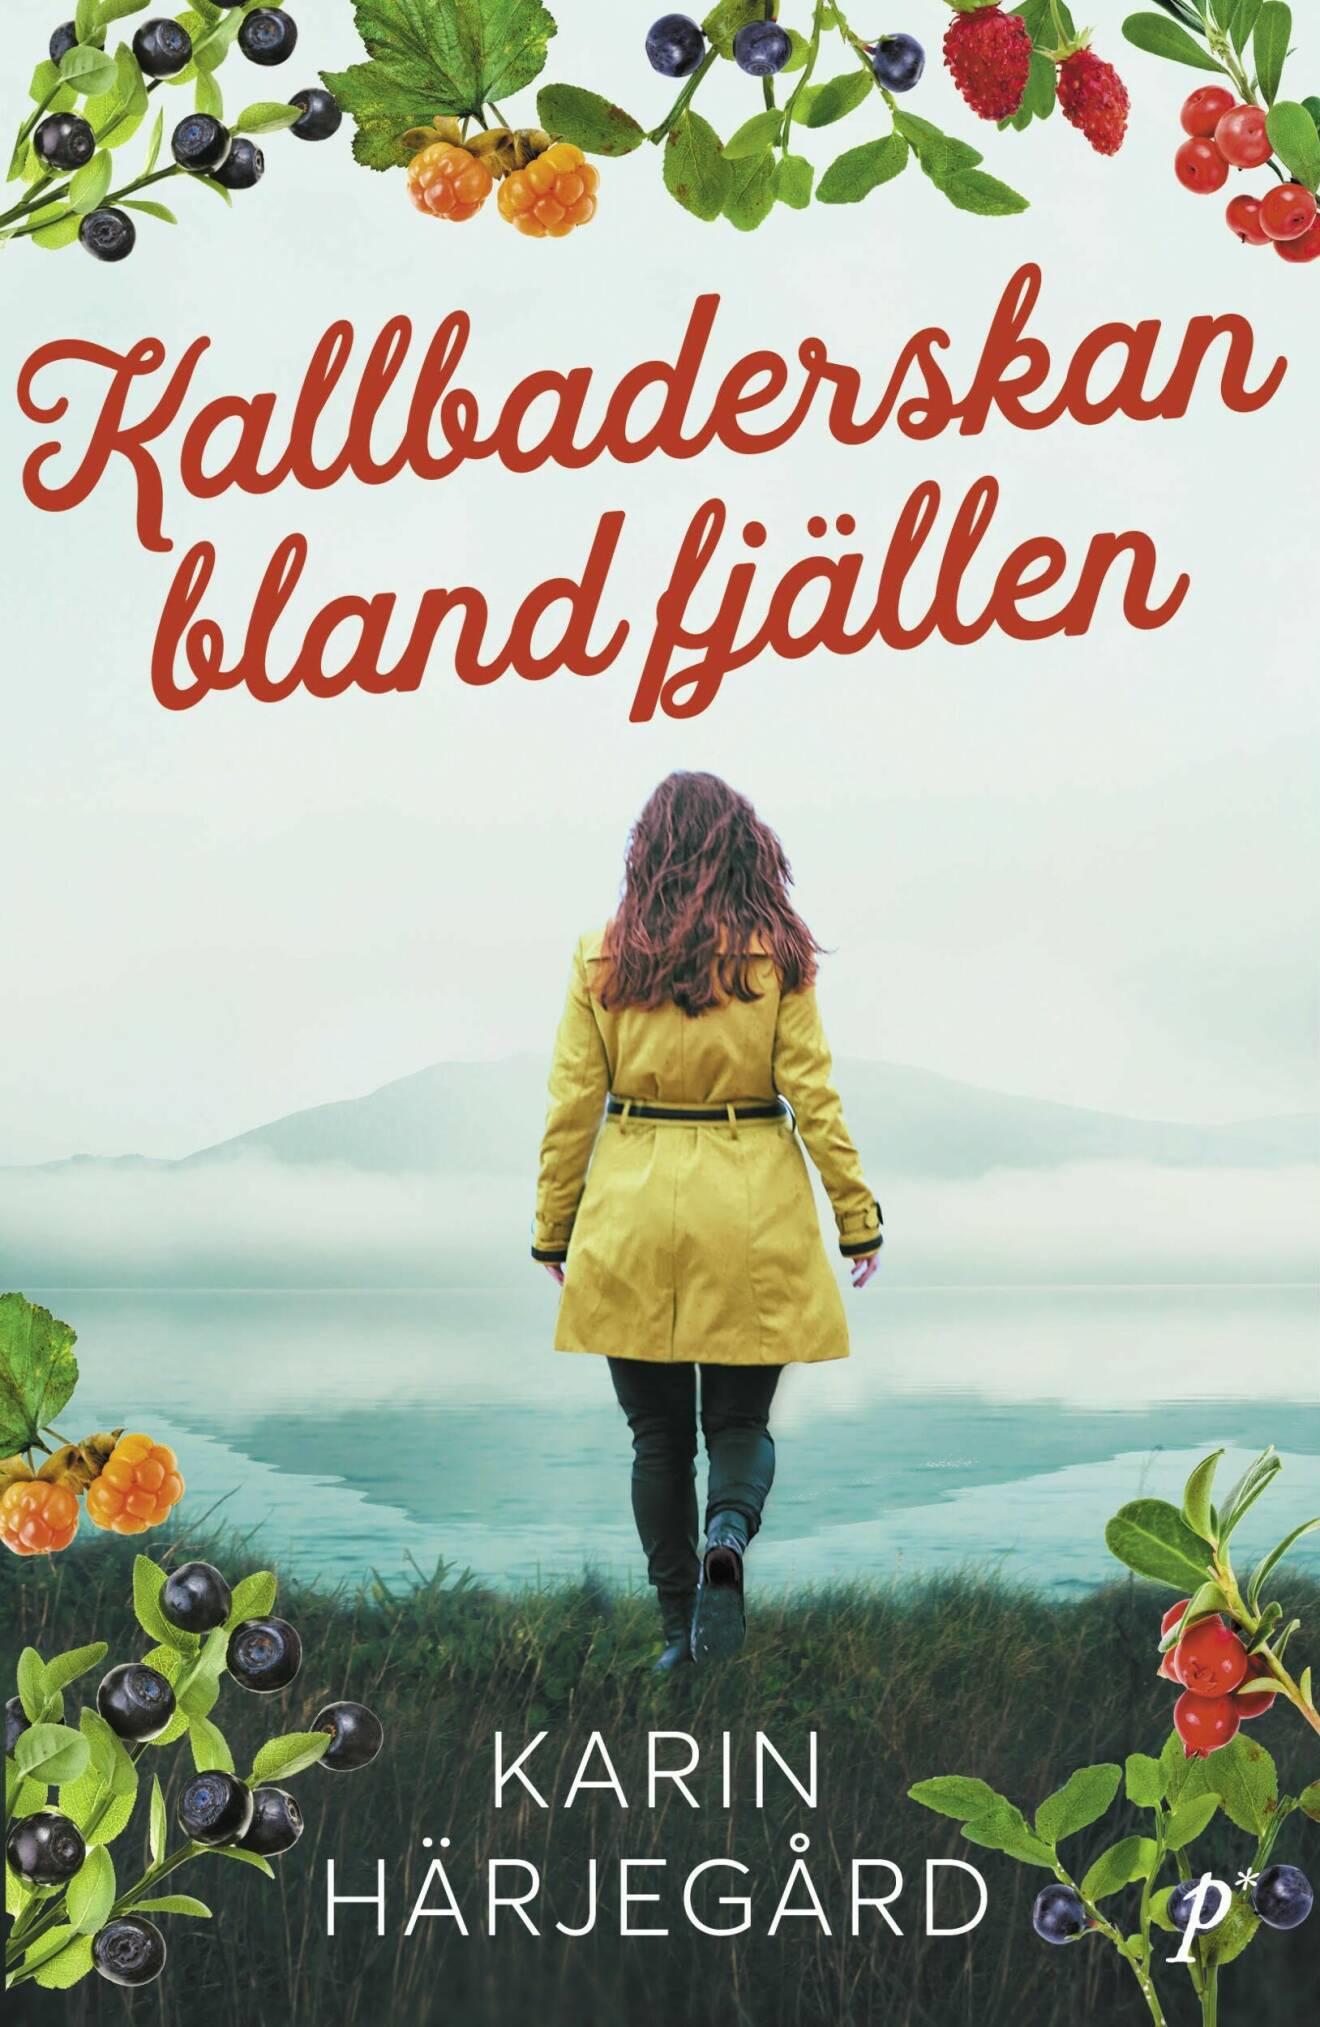 Kallbaderskan bland fjällen av Karin Härjegård.